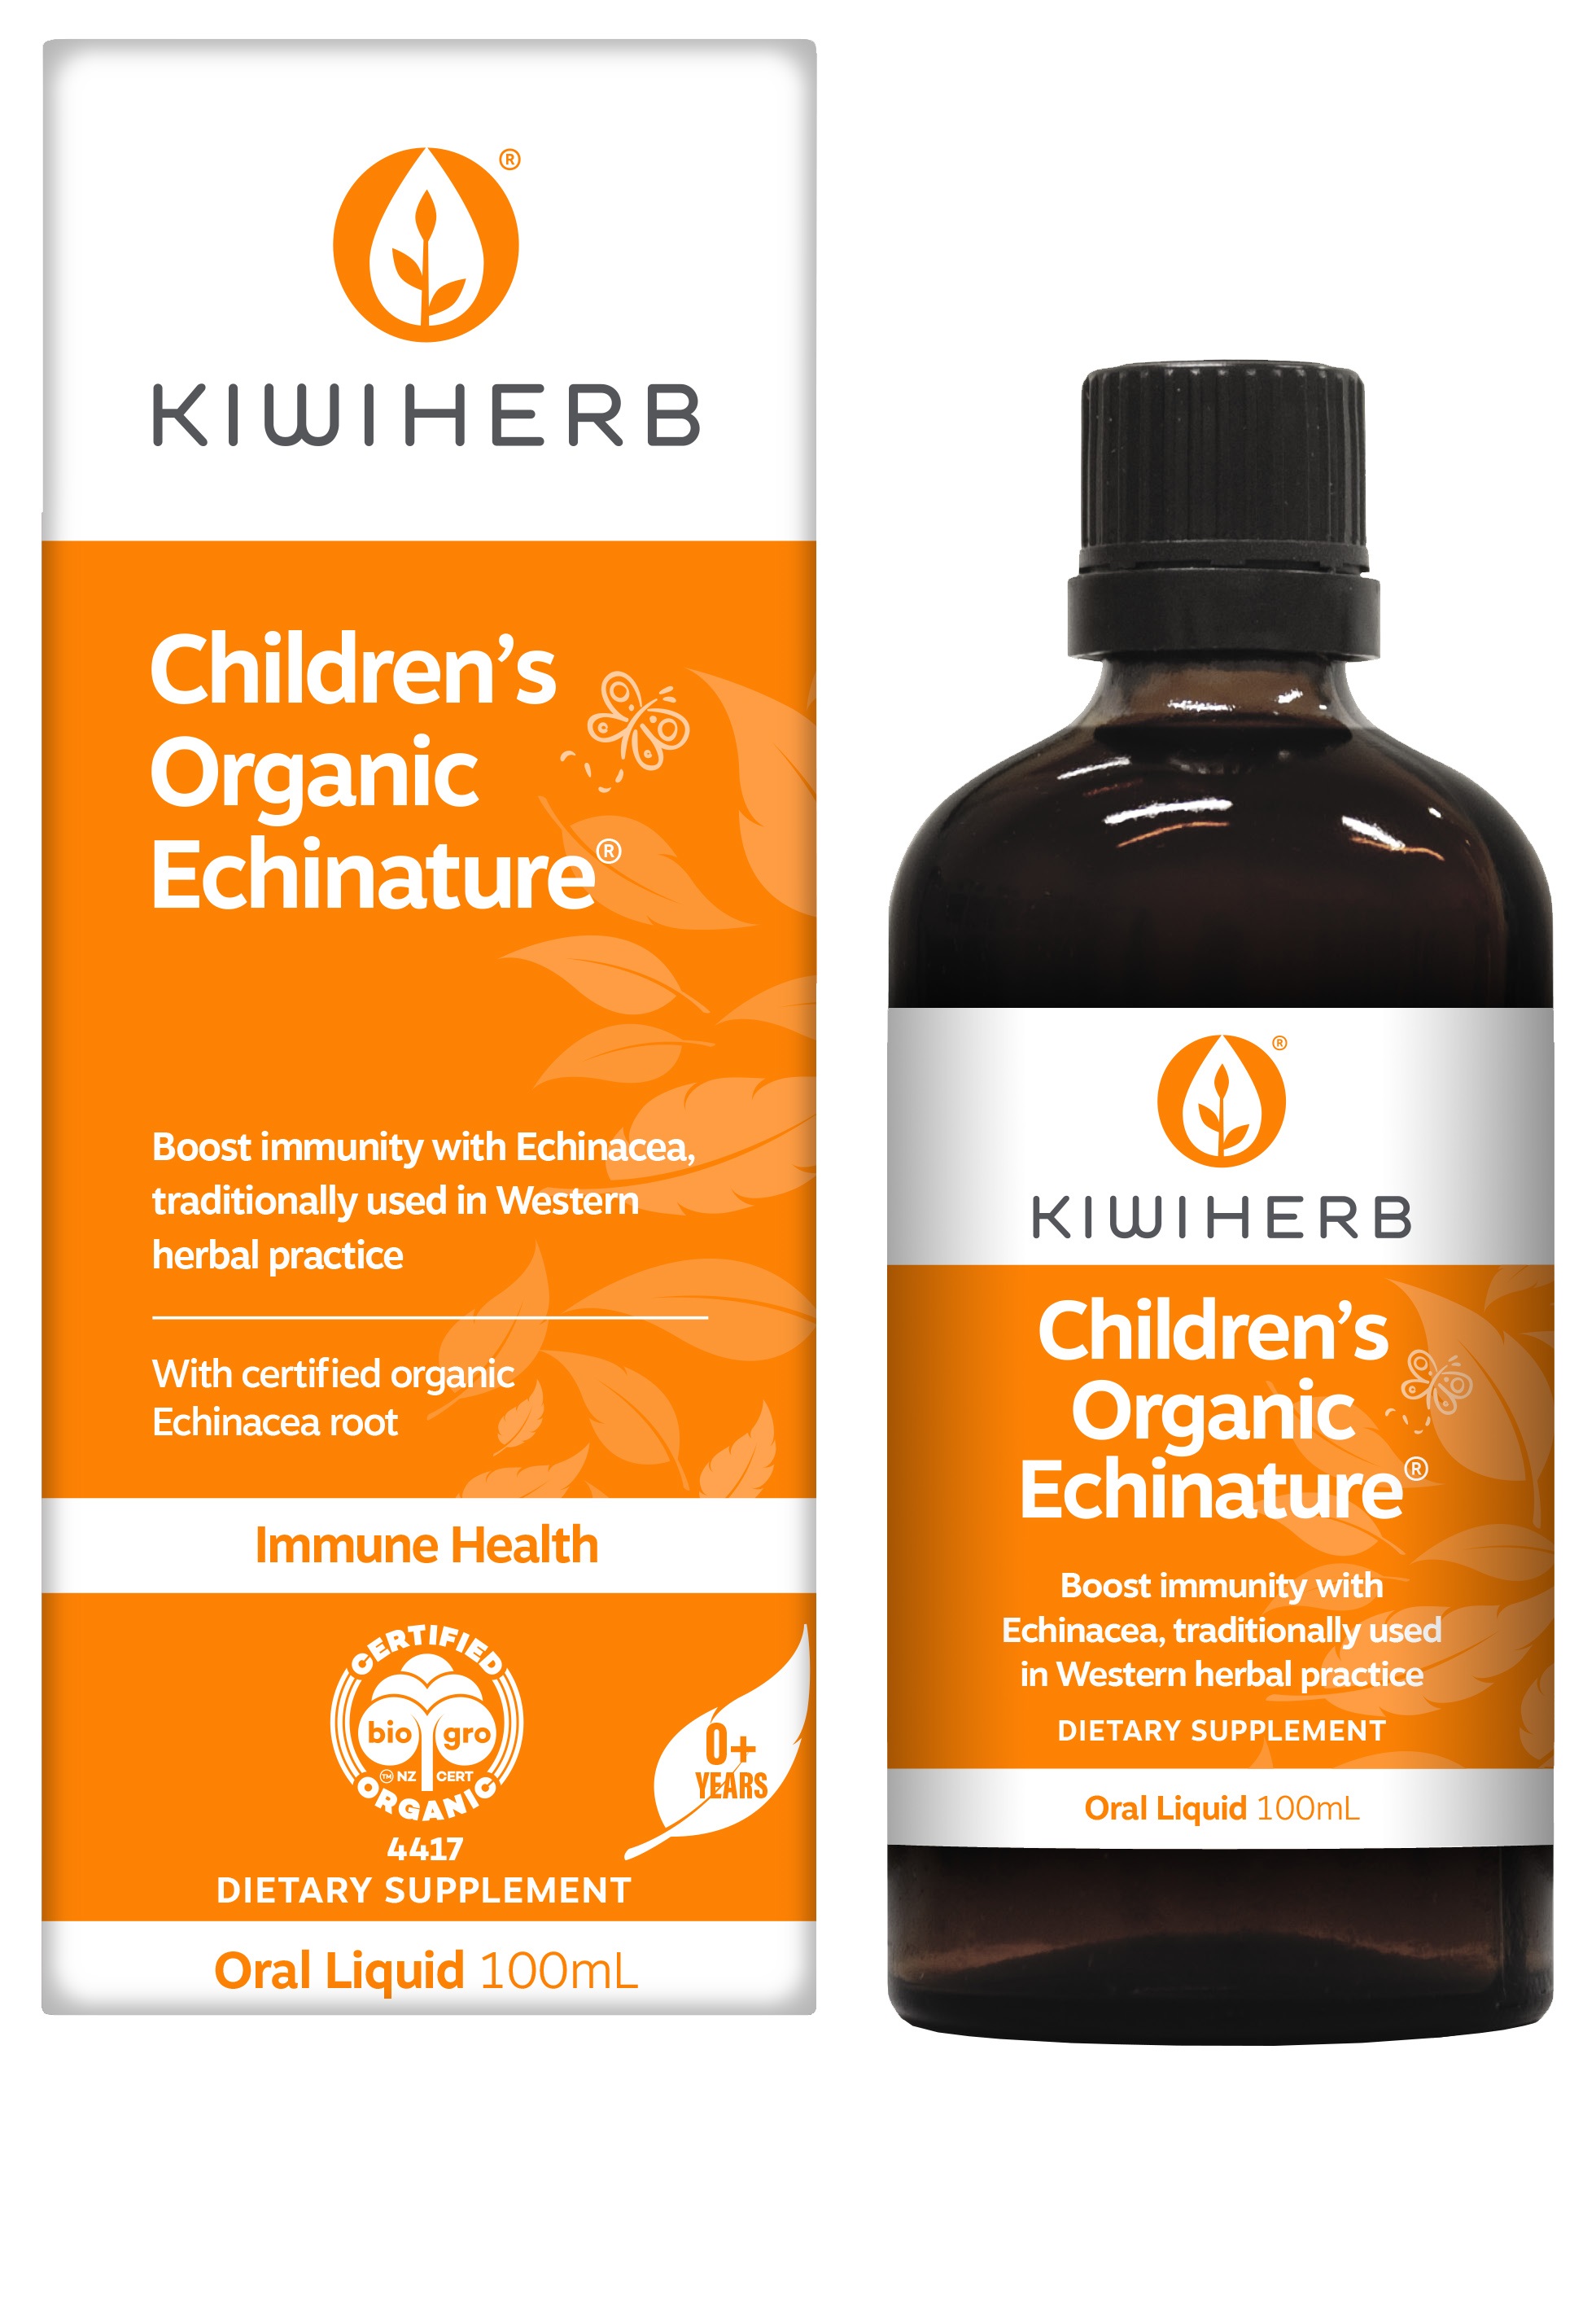 Kiwiherb Childrens Echinature Organic 100ml